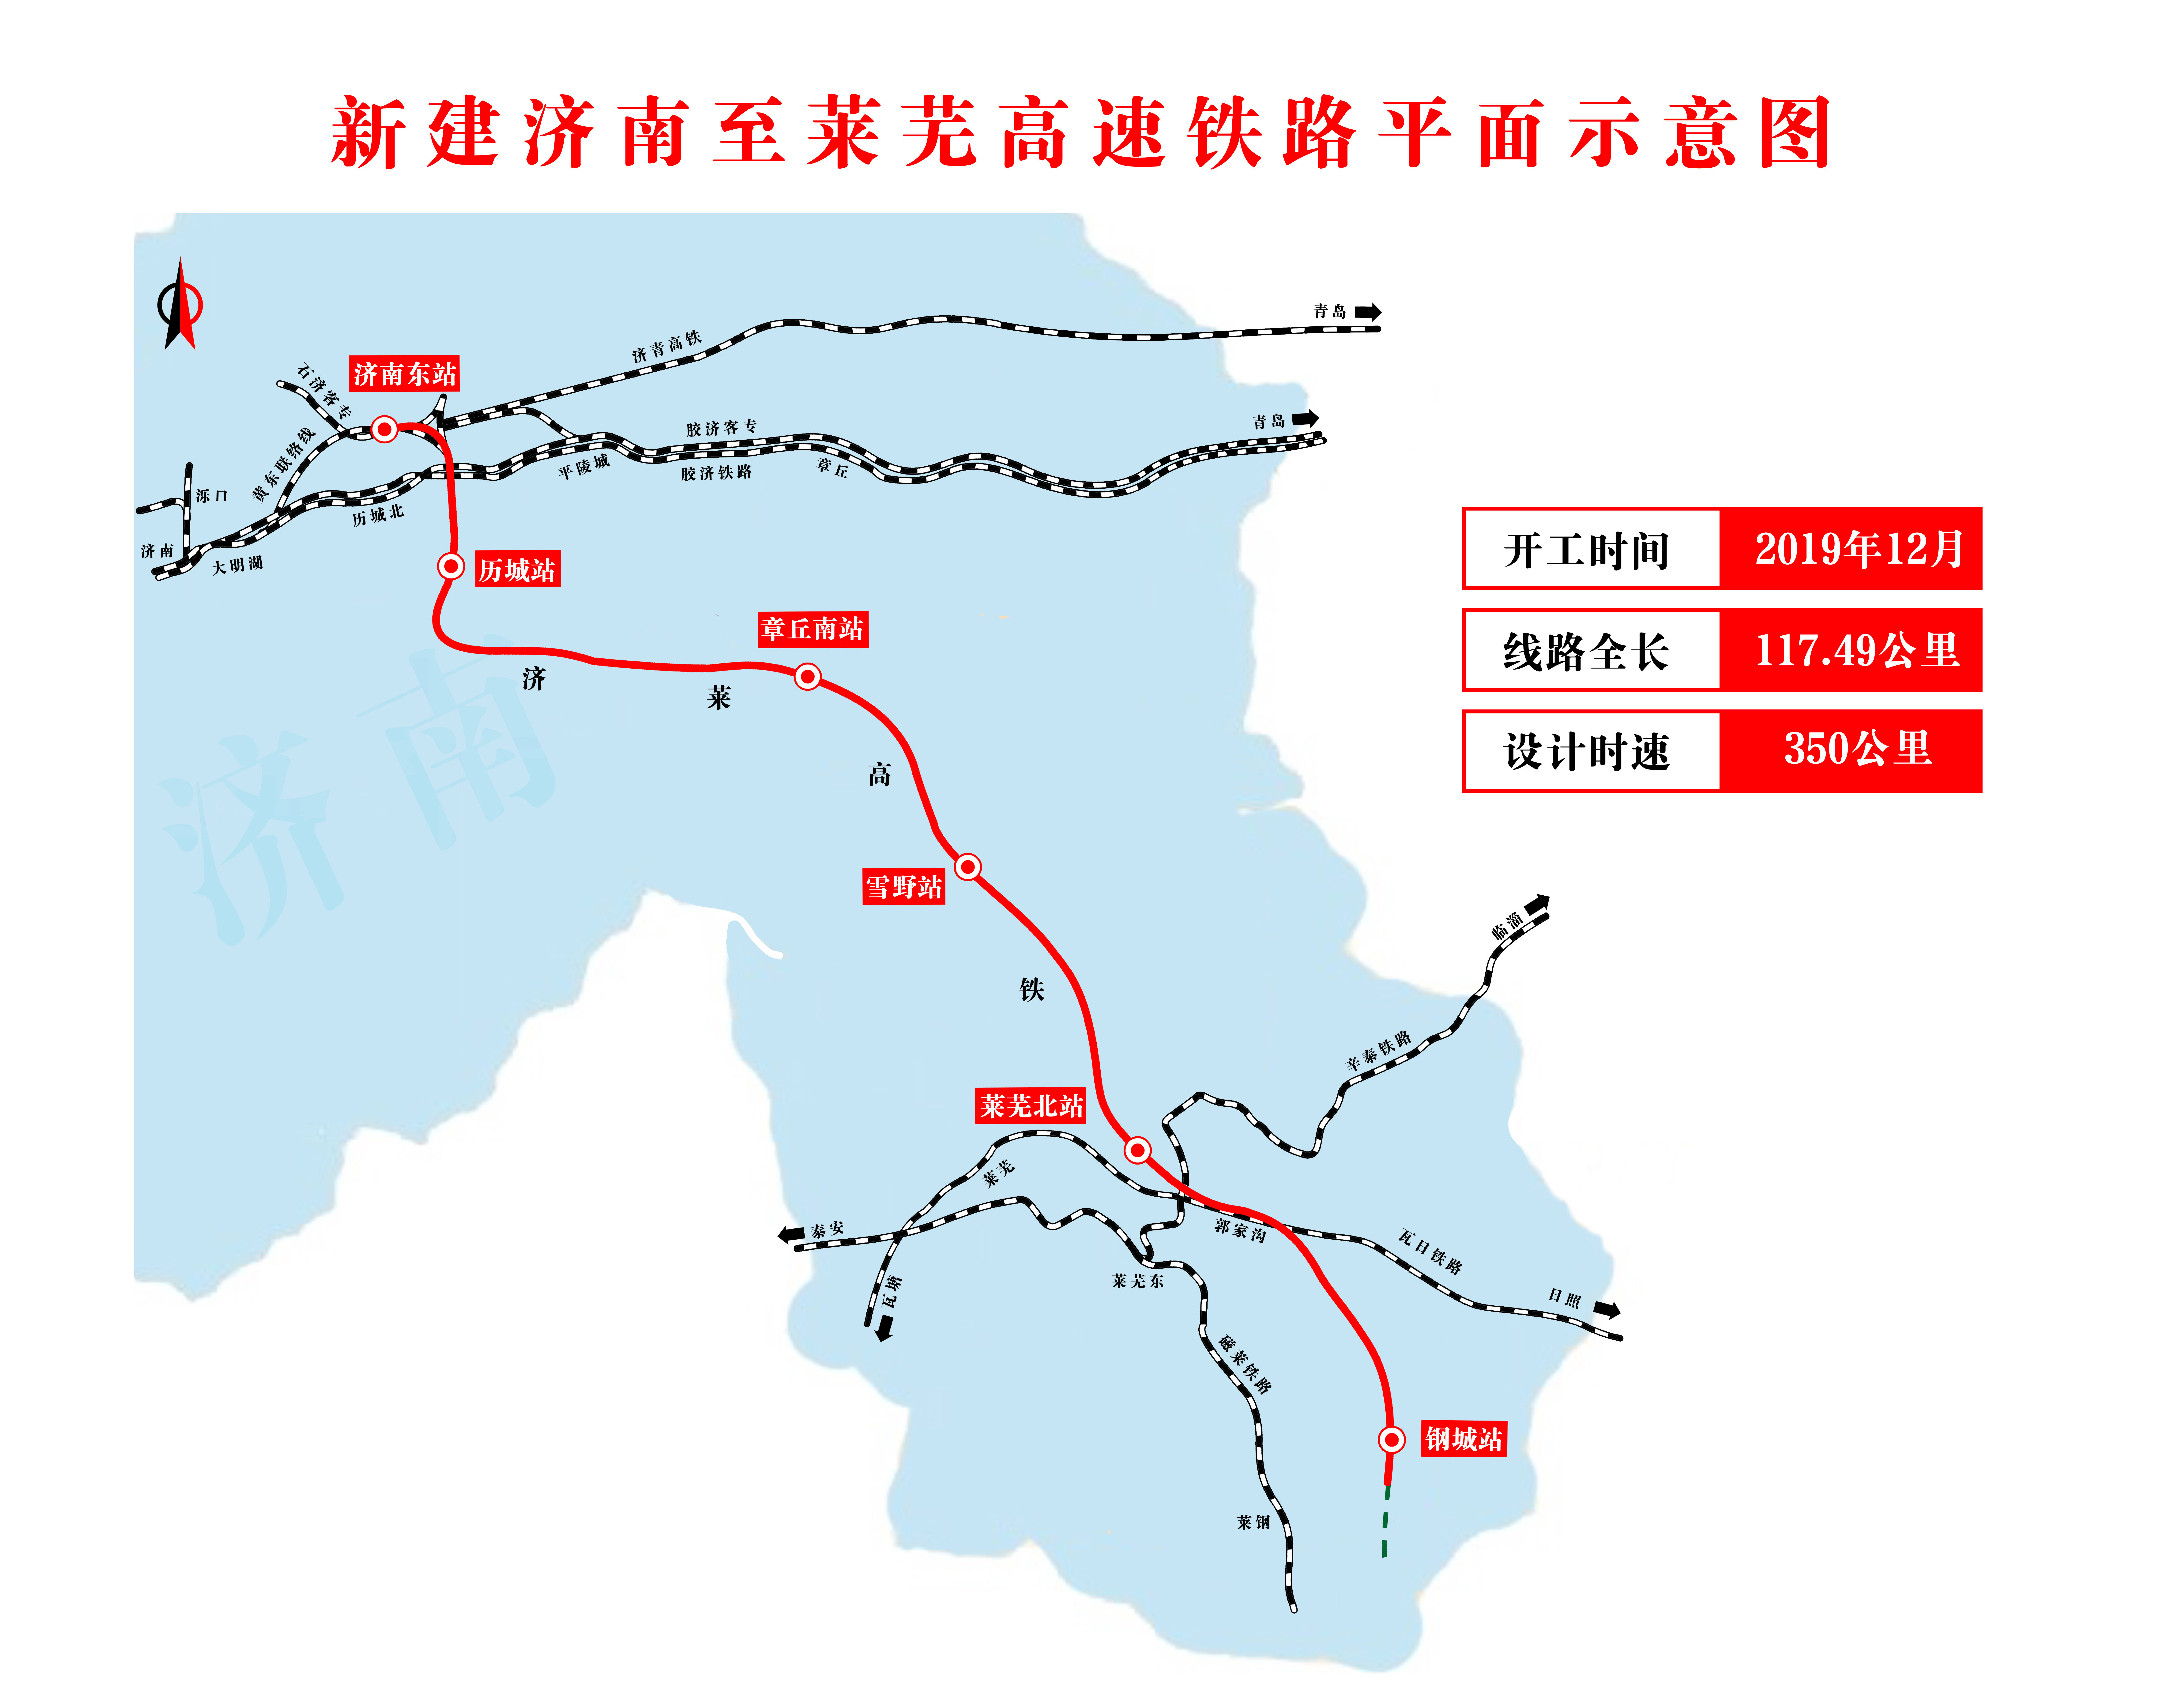 国内首条市内高铁 济南至莱芜高速铁路联调联试正式启动